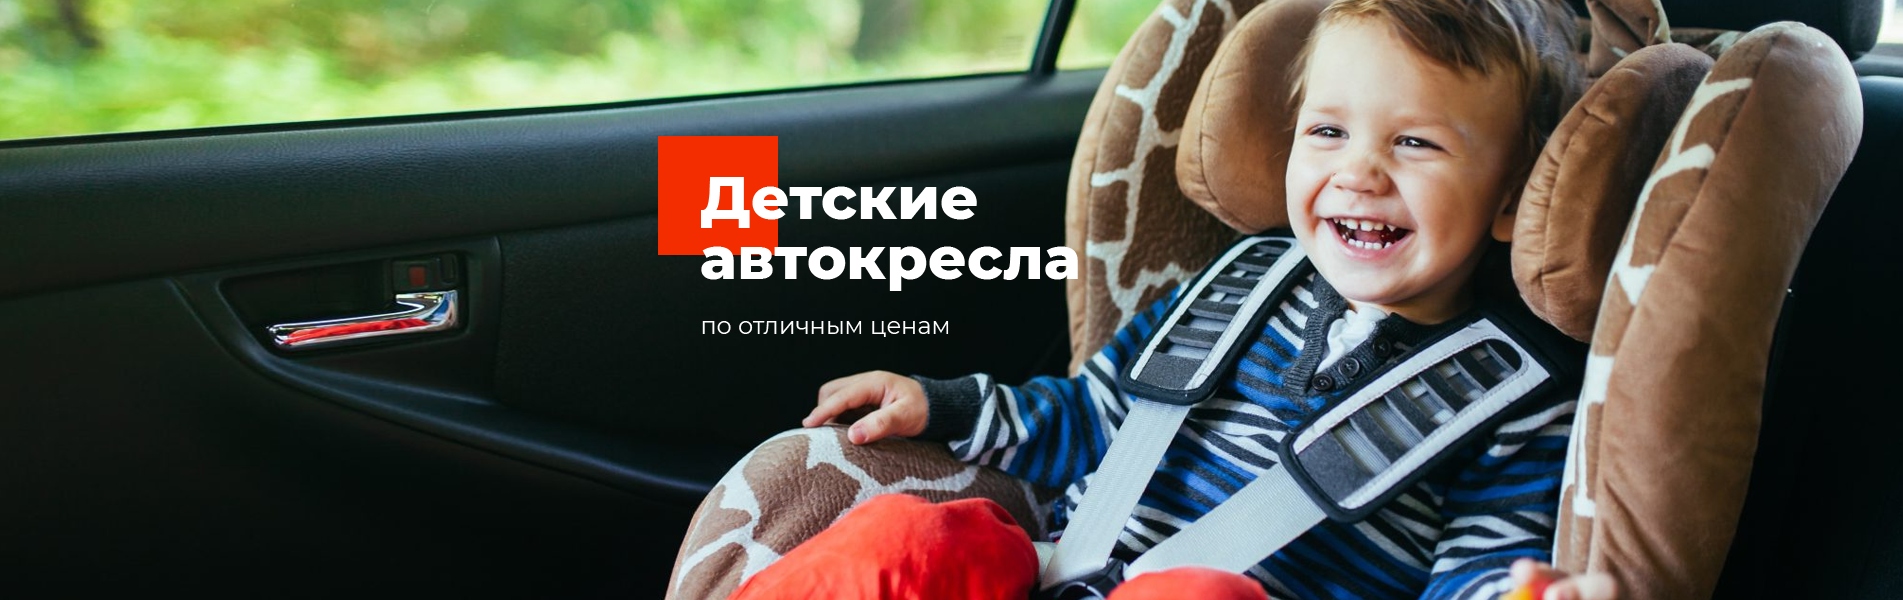 Безопасные детские автокресла, автокресла для младенцев и детей